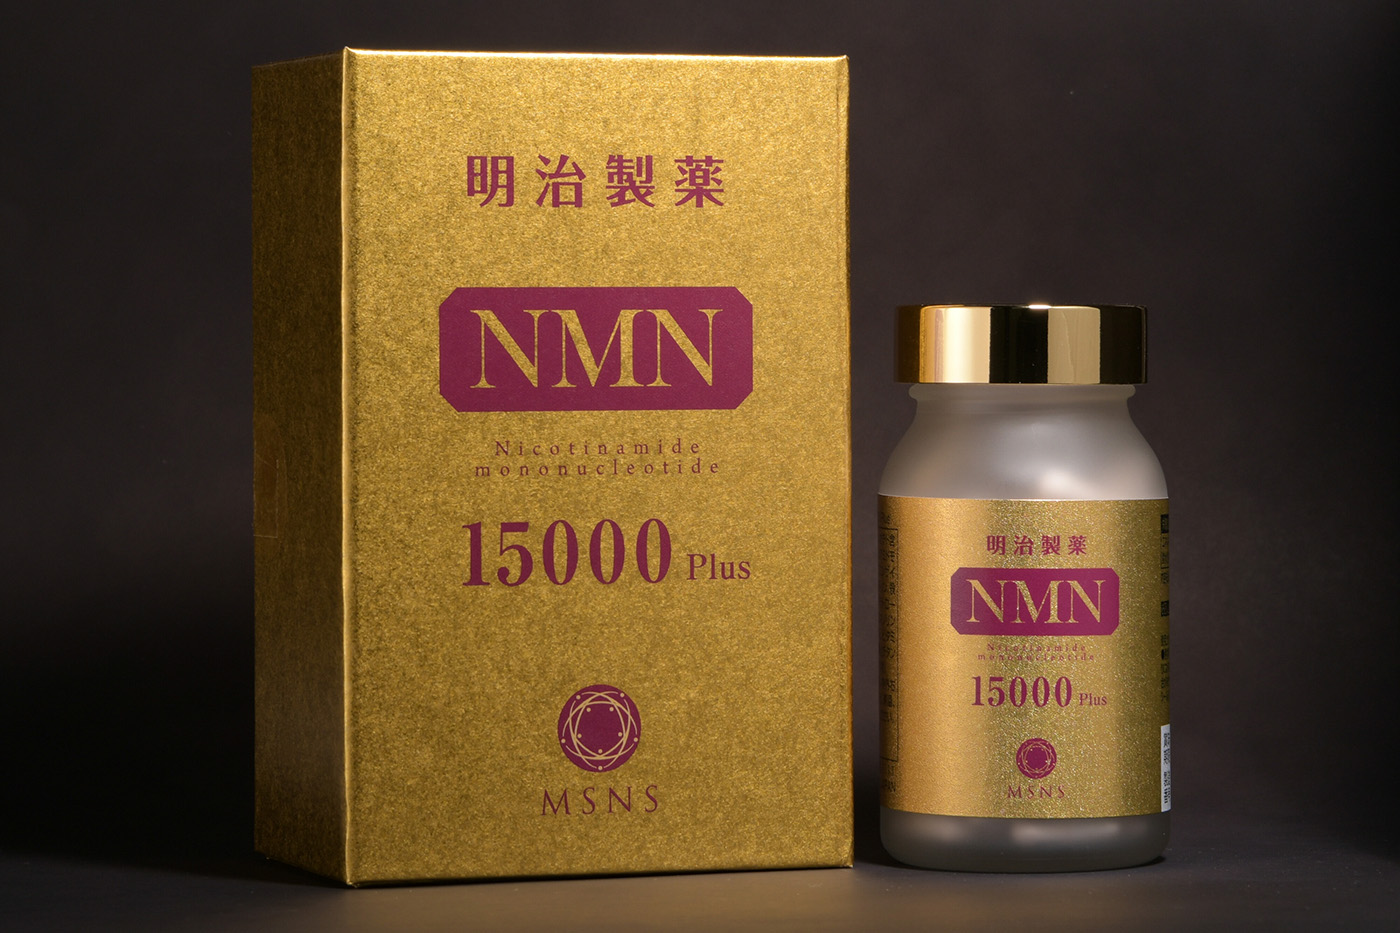 明治製薬 高純度 NMN 15000 Plus 健康食品 国内正規品